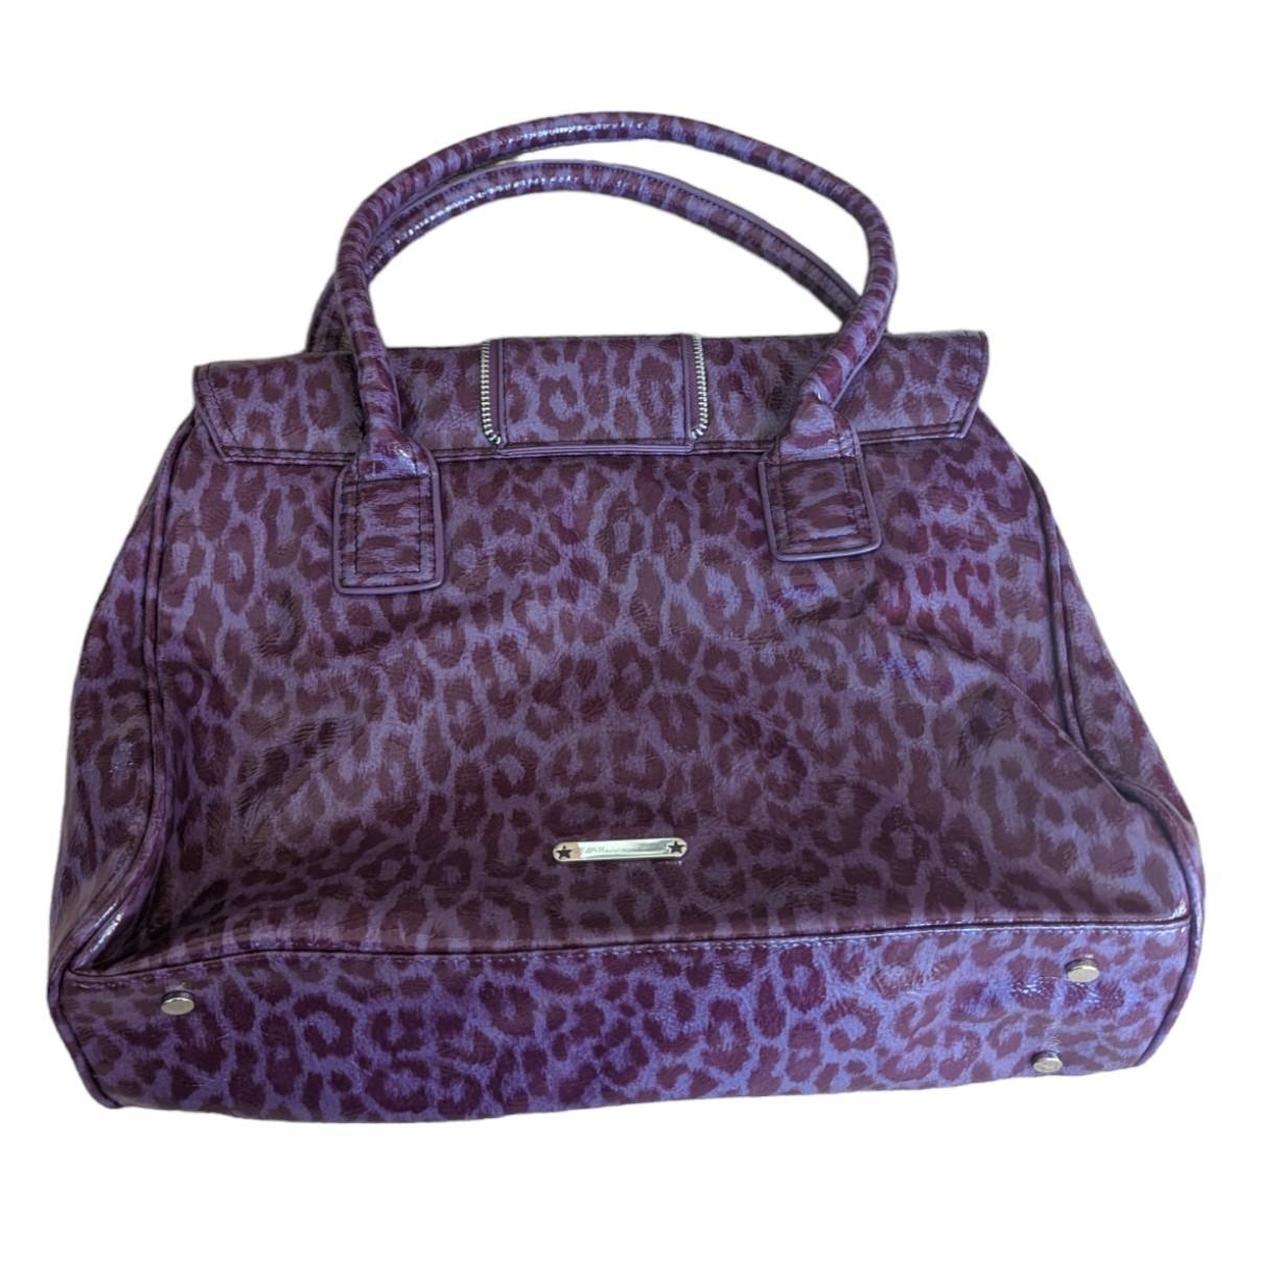 Debenhams Women's Purple Bag (4)